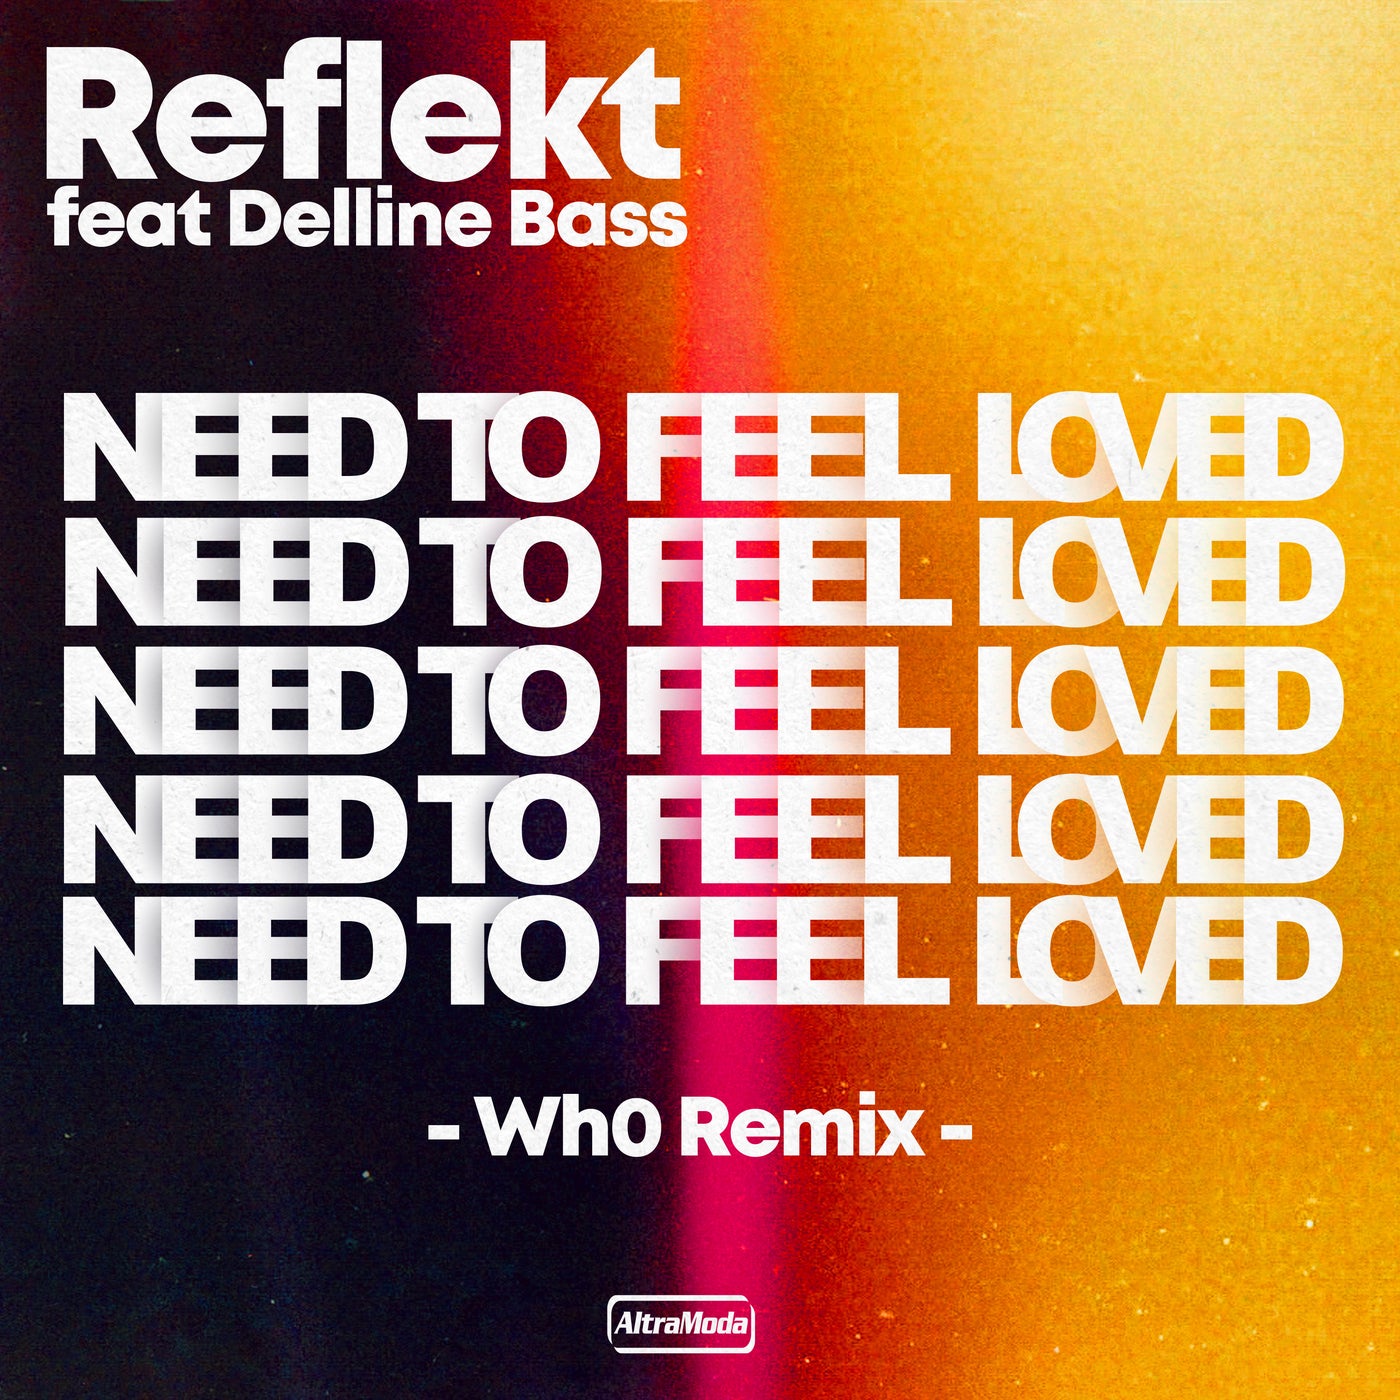 Reflekt need to feel loved. Reflekt featuring Delline Bass - need to feel Love. Reflekt ft. Delline Bass. Reflekt_featuring.